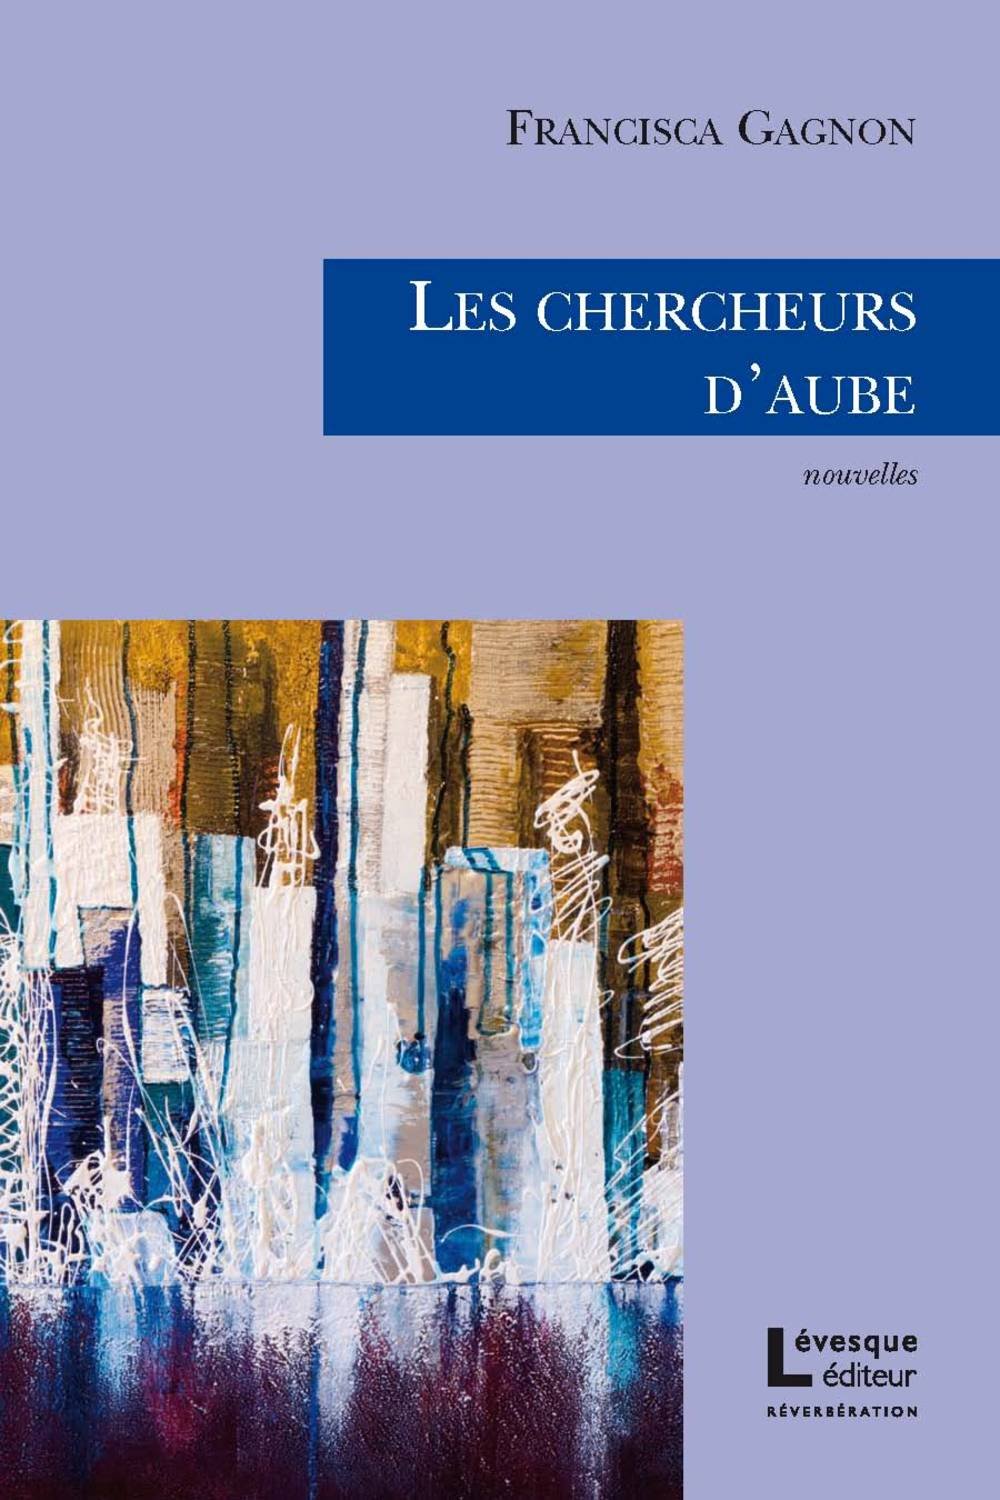 Livre ISBN 2923844203 Les chercheurs d'aube (Francisca Gagnon)